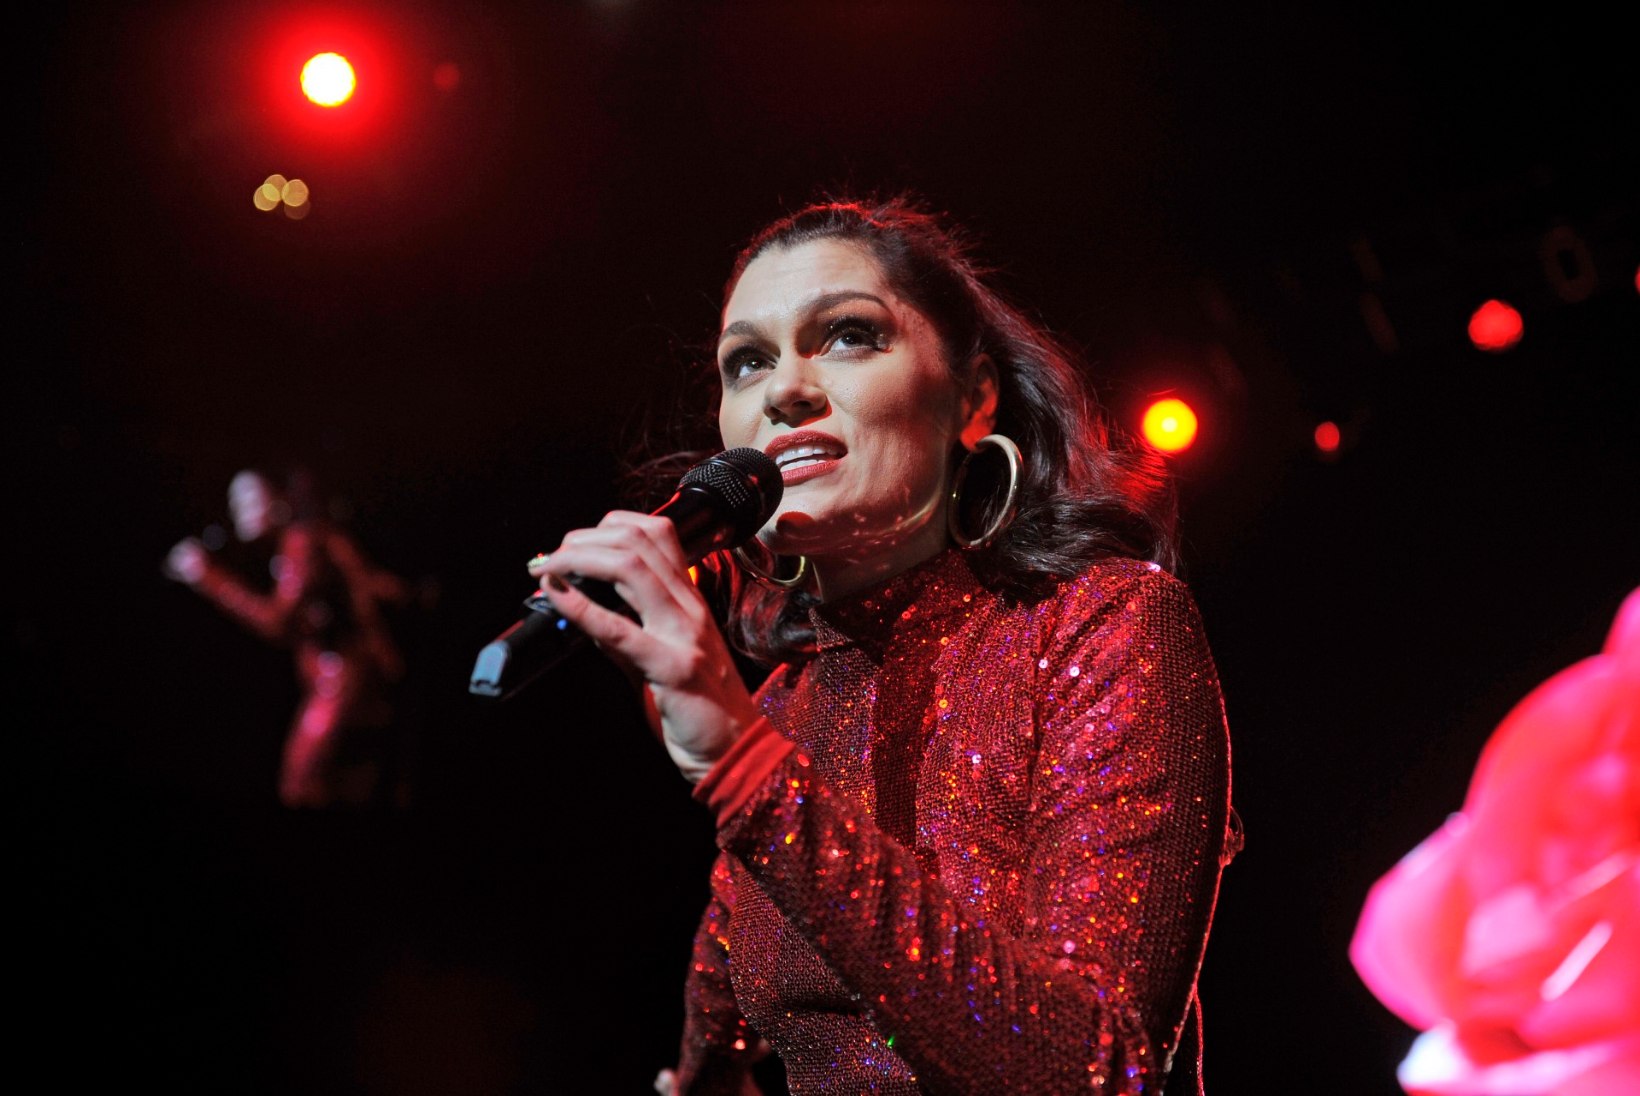 FOTO | Fännid vaimustuses: lauljatar Jessie J ei häbene tselluliiti